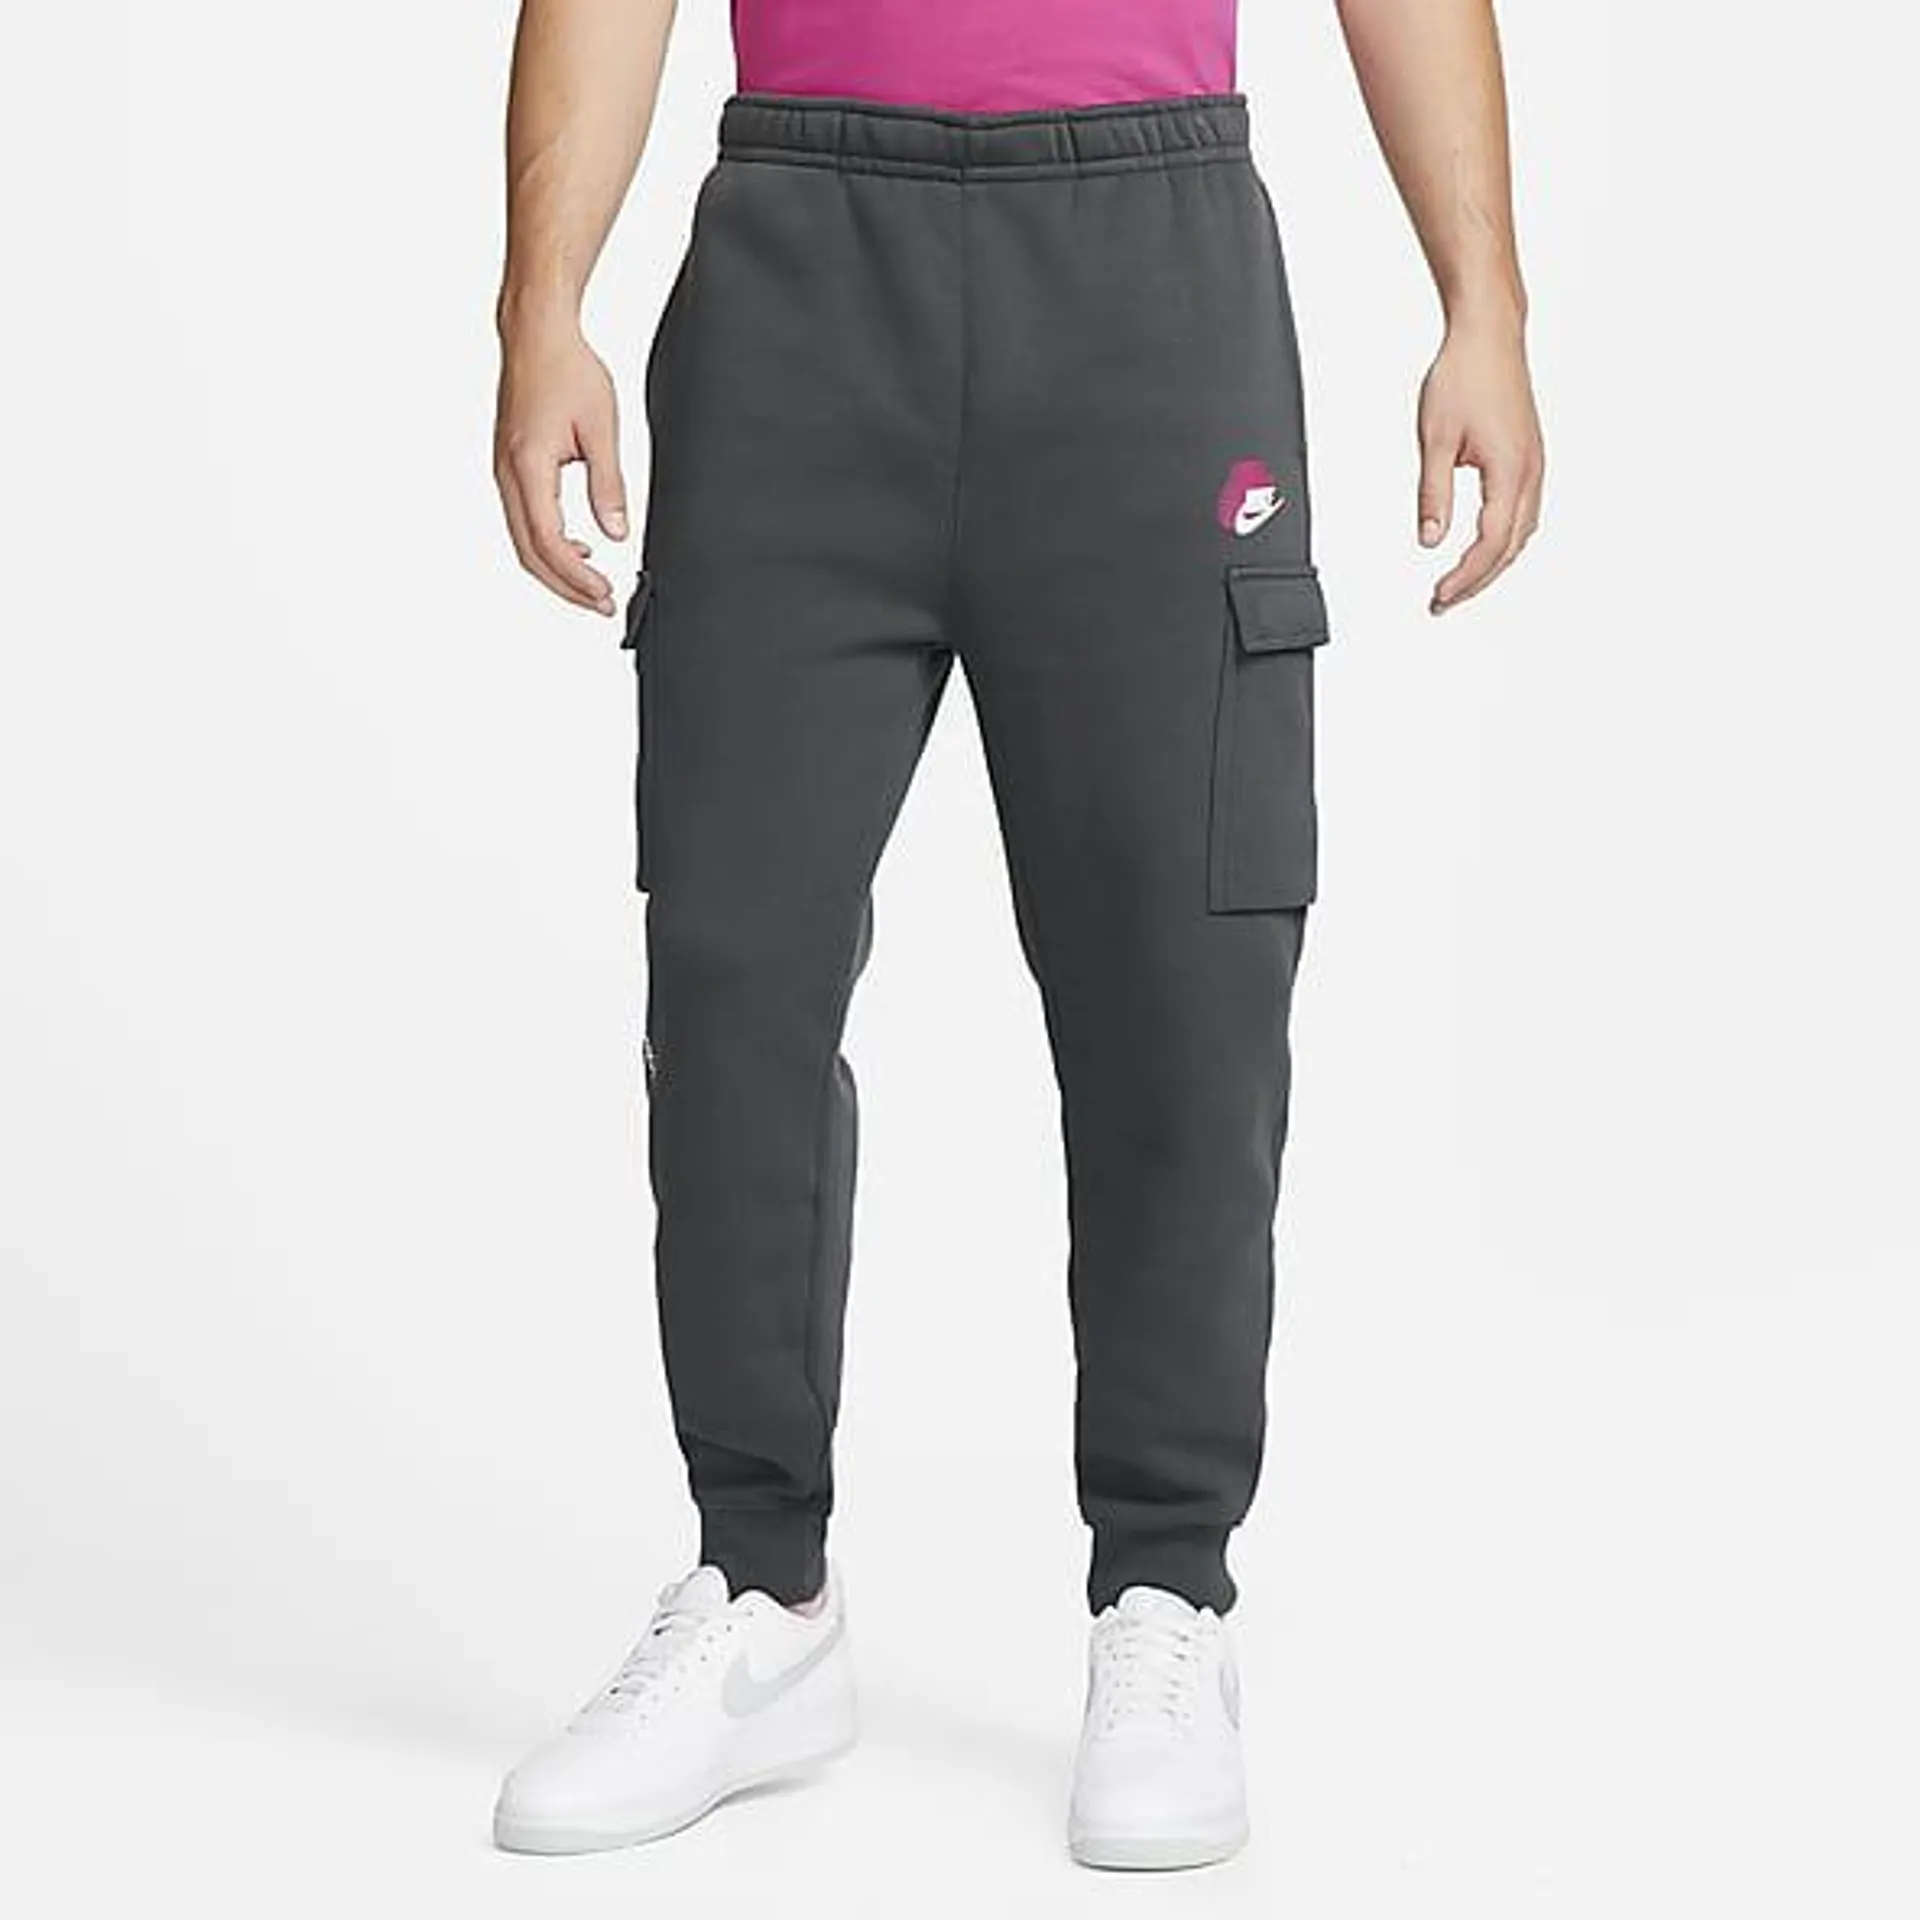 Nike Sportswear Standard Issue